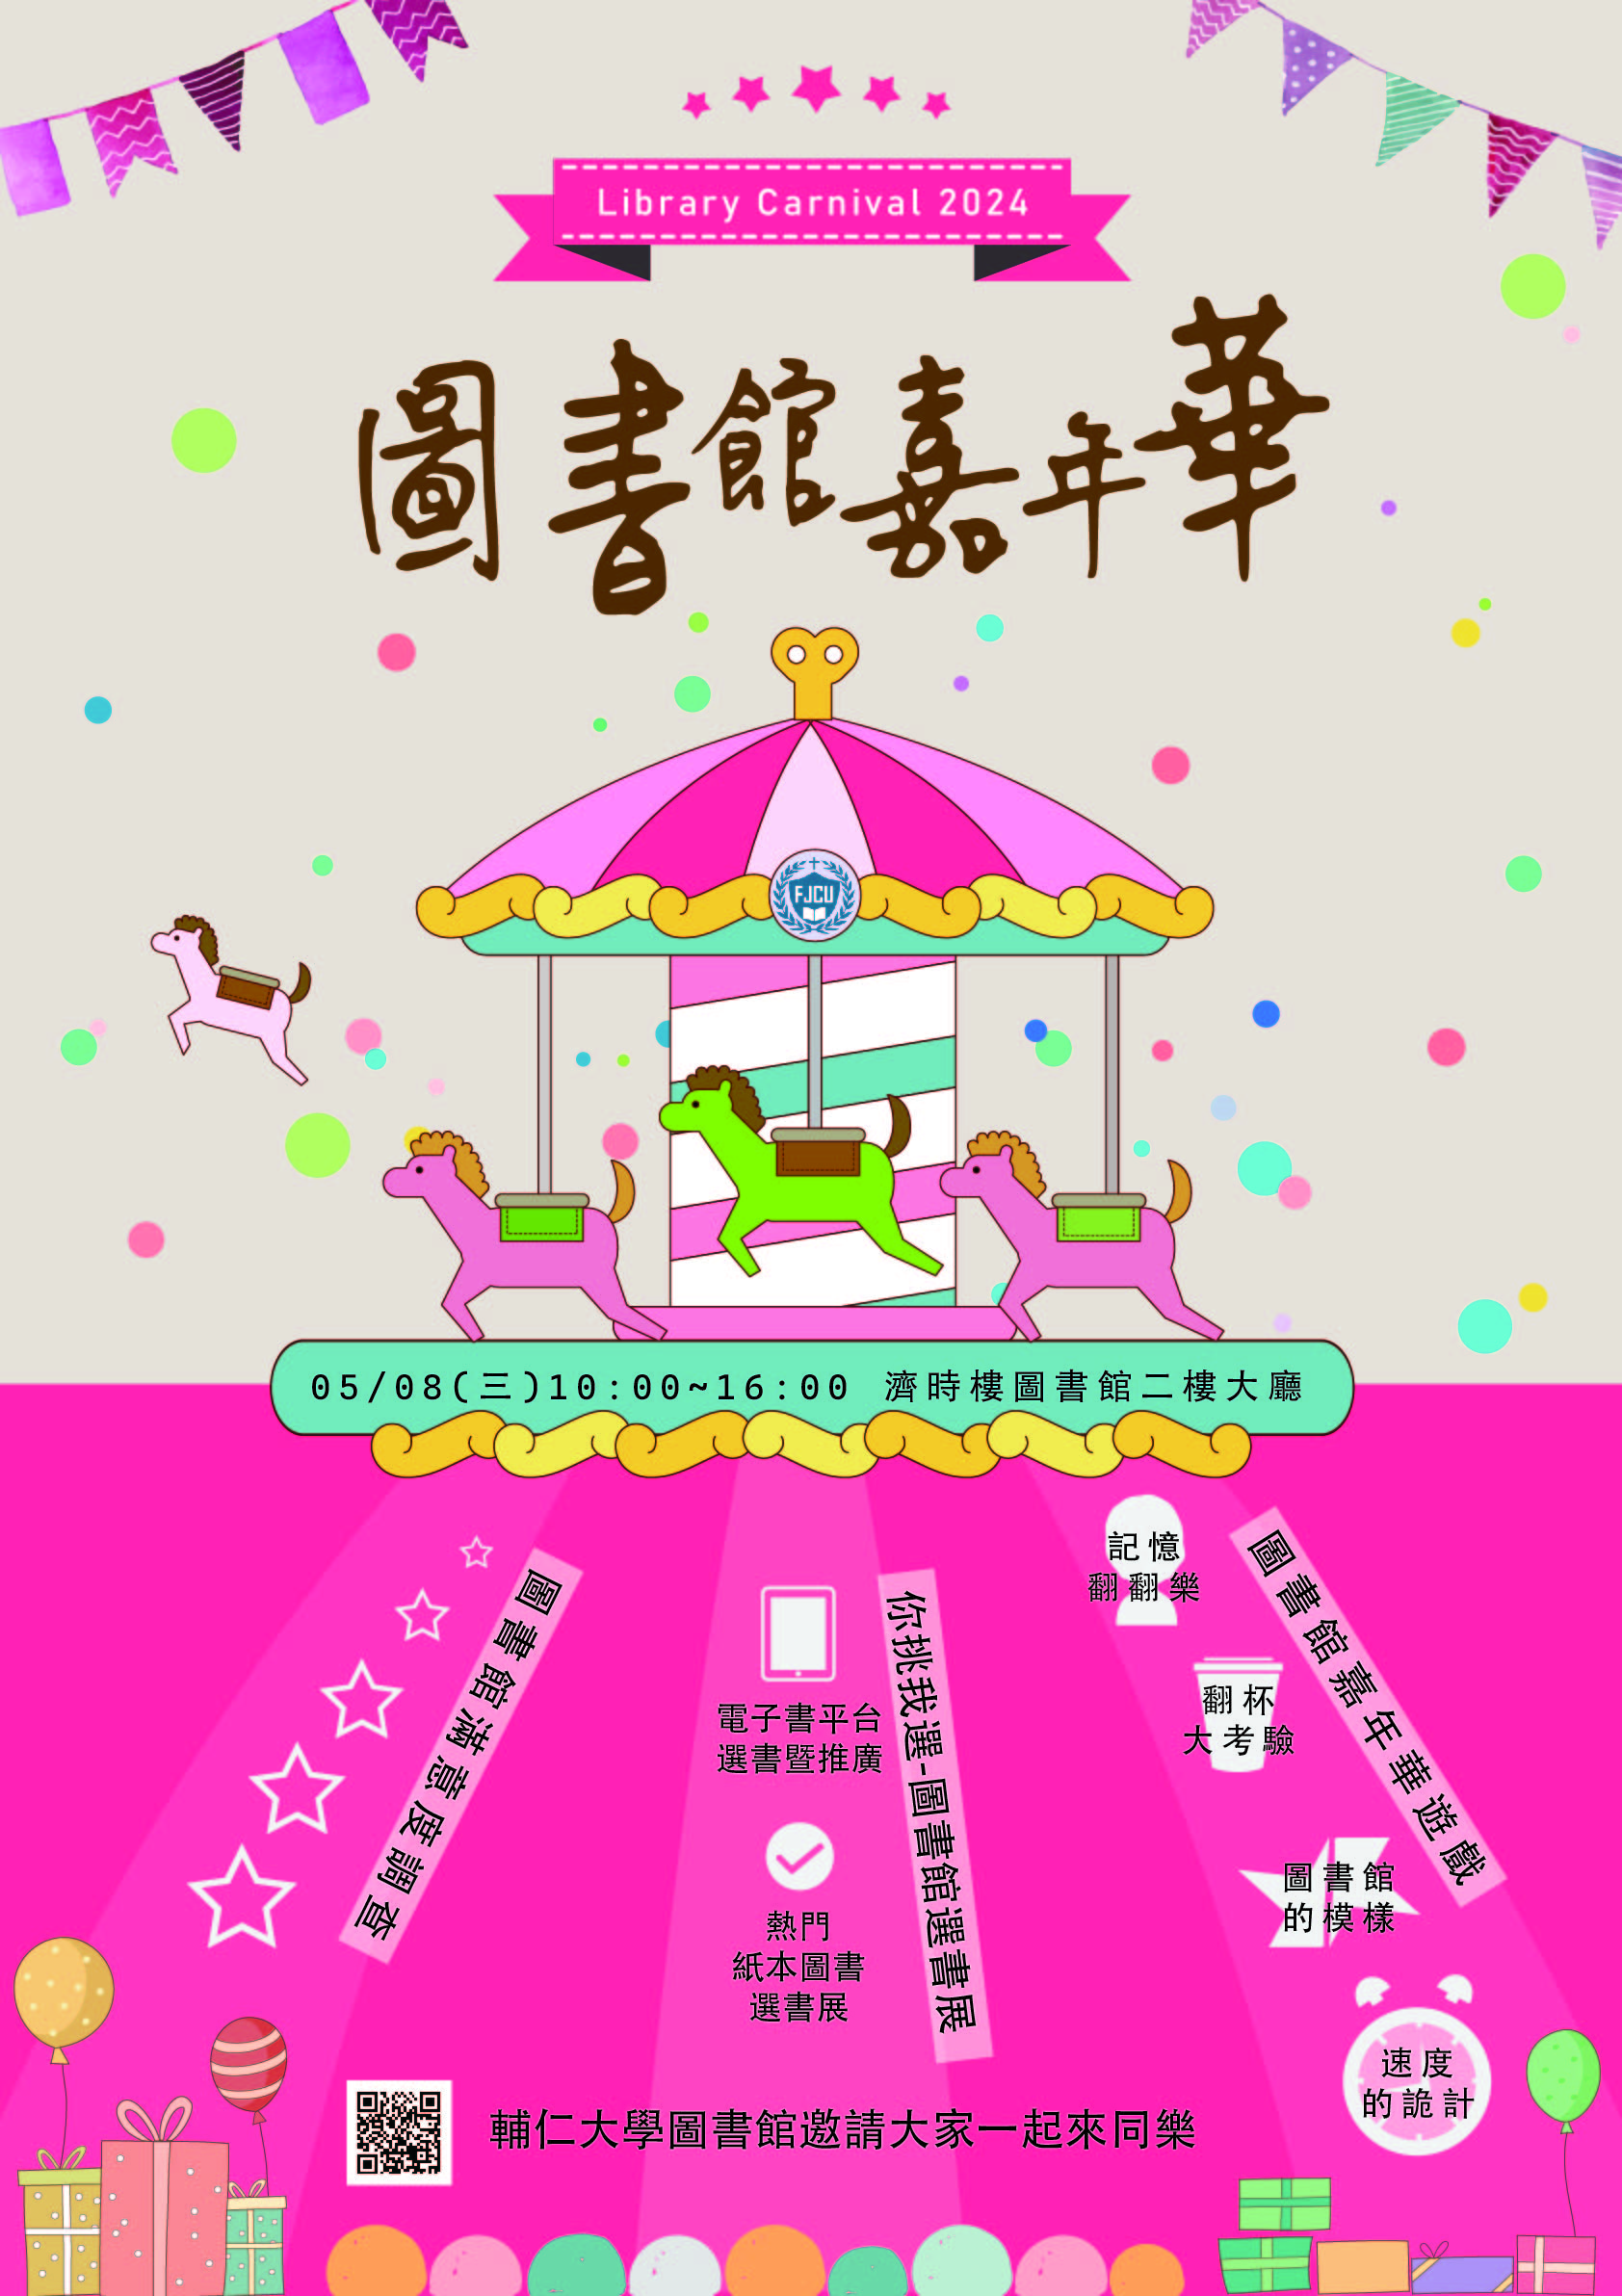 圖書館嘉年華 Library Carnival 2024